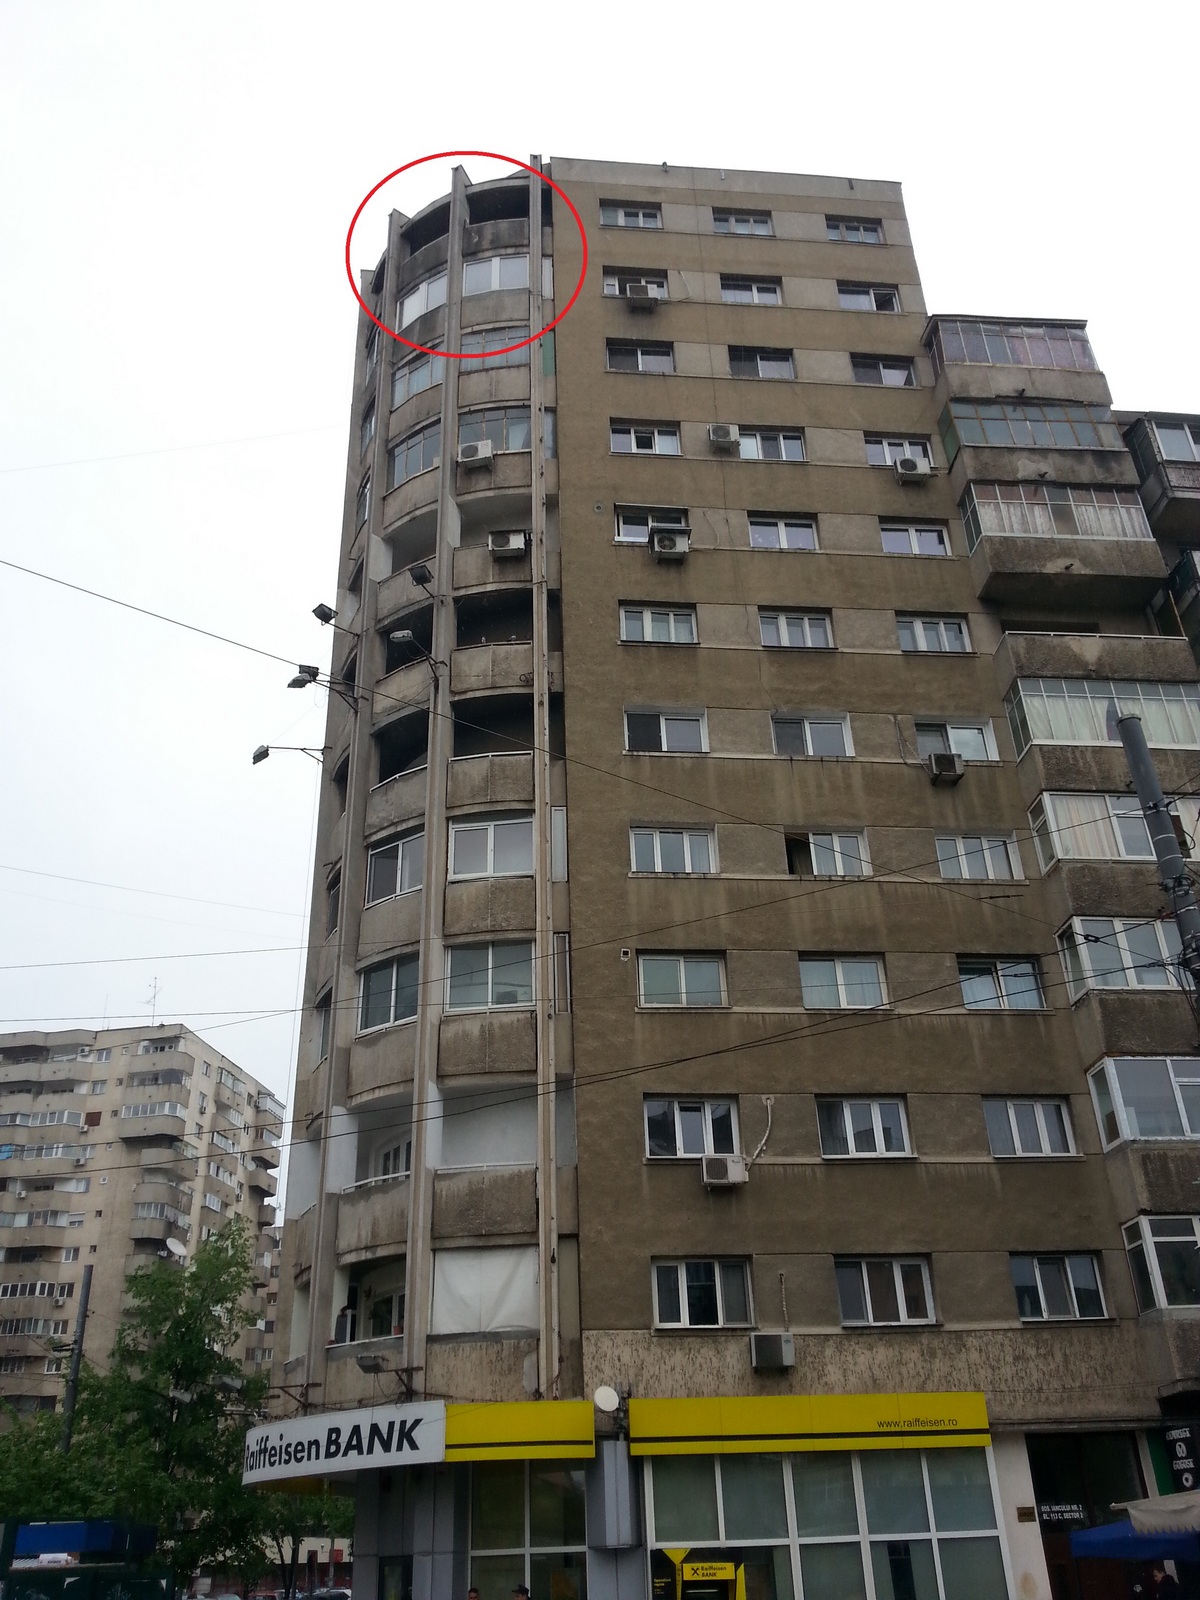 Bucata de fatada a cazut in jurul orei 22.00 de la balconul unui apartament situat la etajul noua